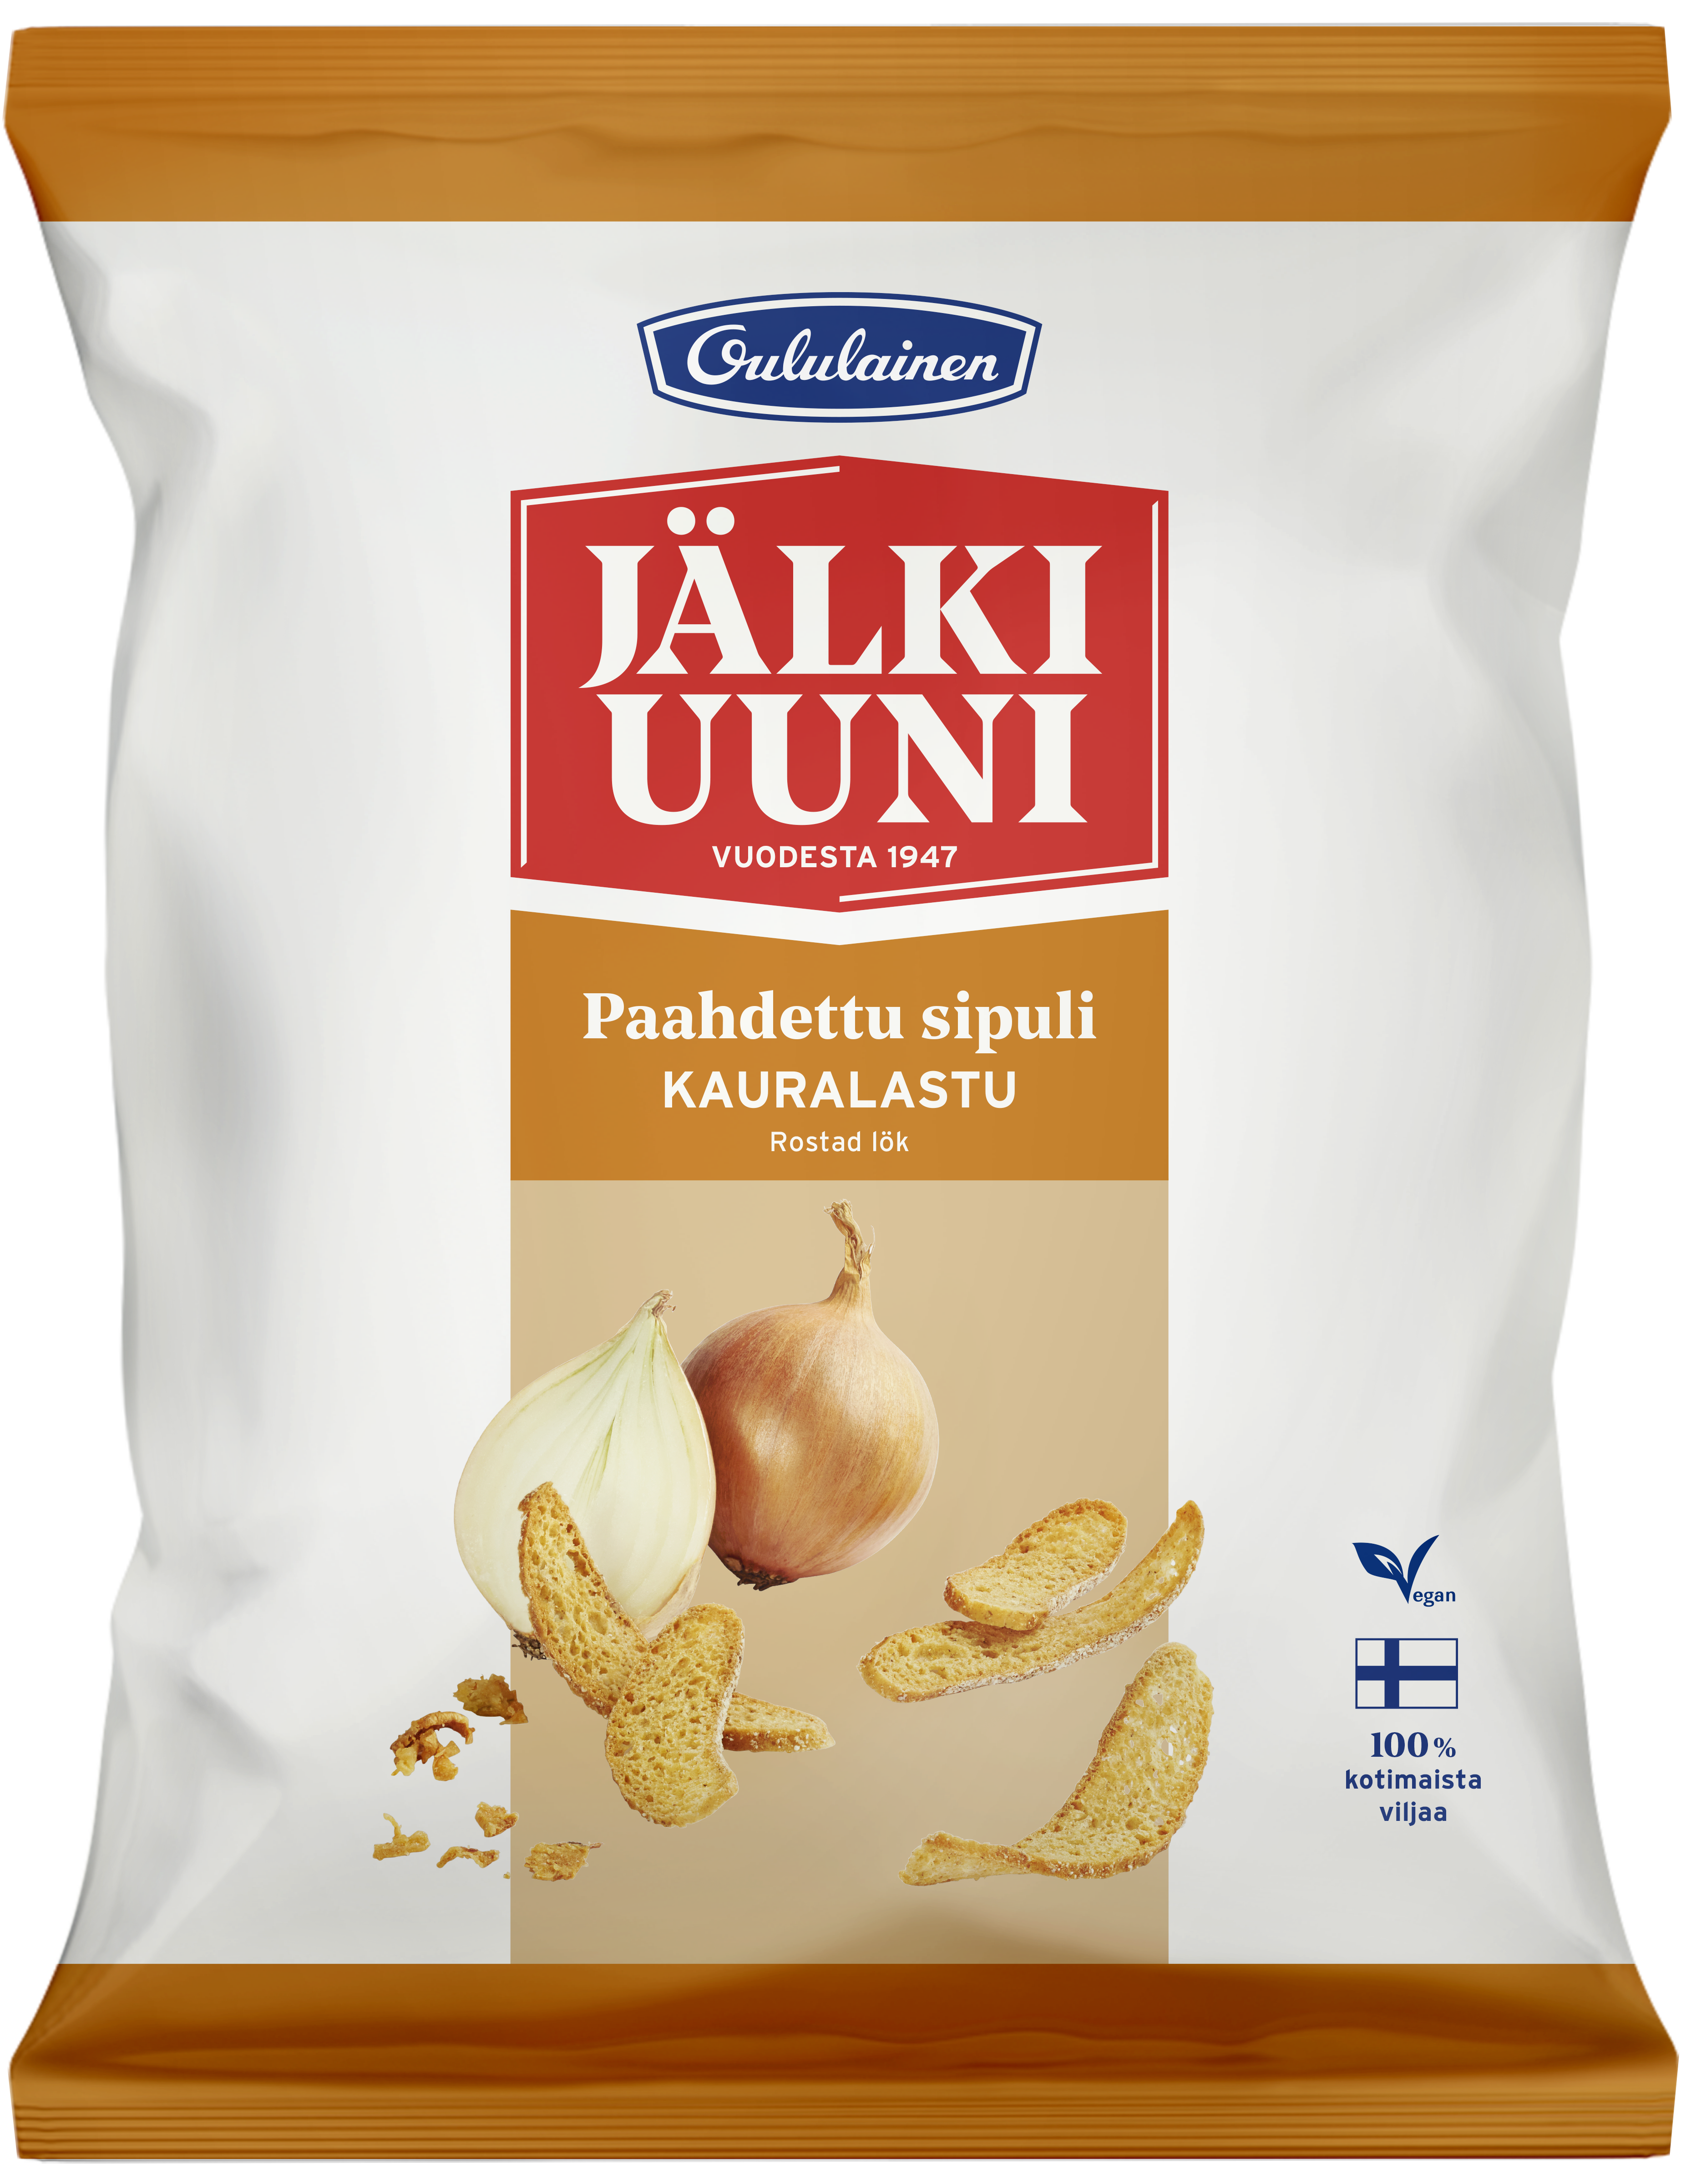 Oululainen Jälkiuuni Oat chip Roasted Onion 120g